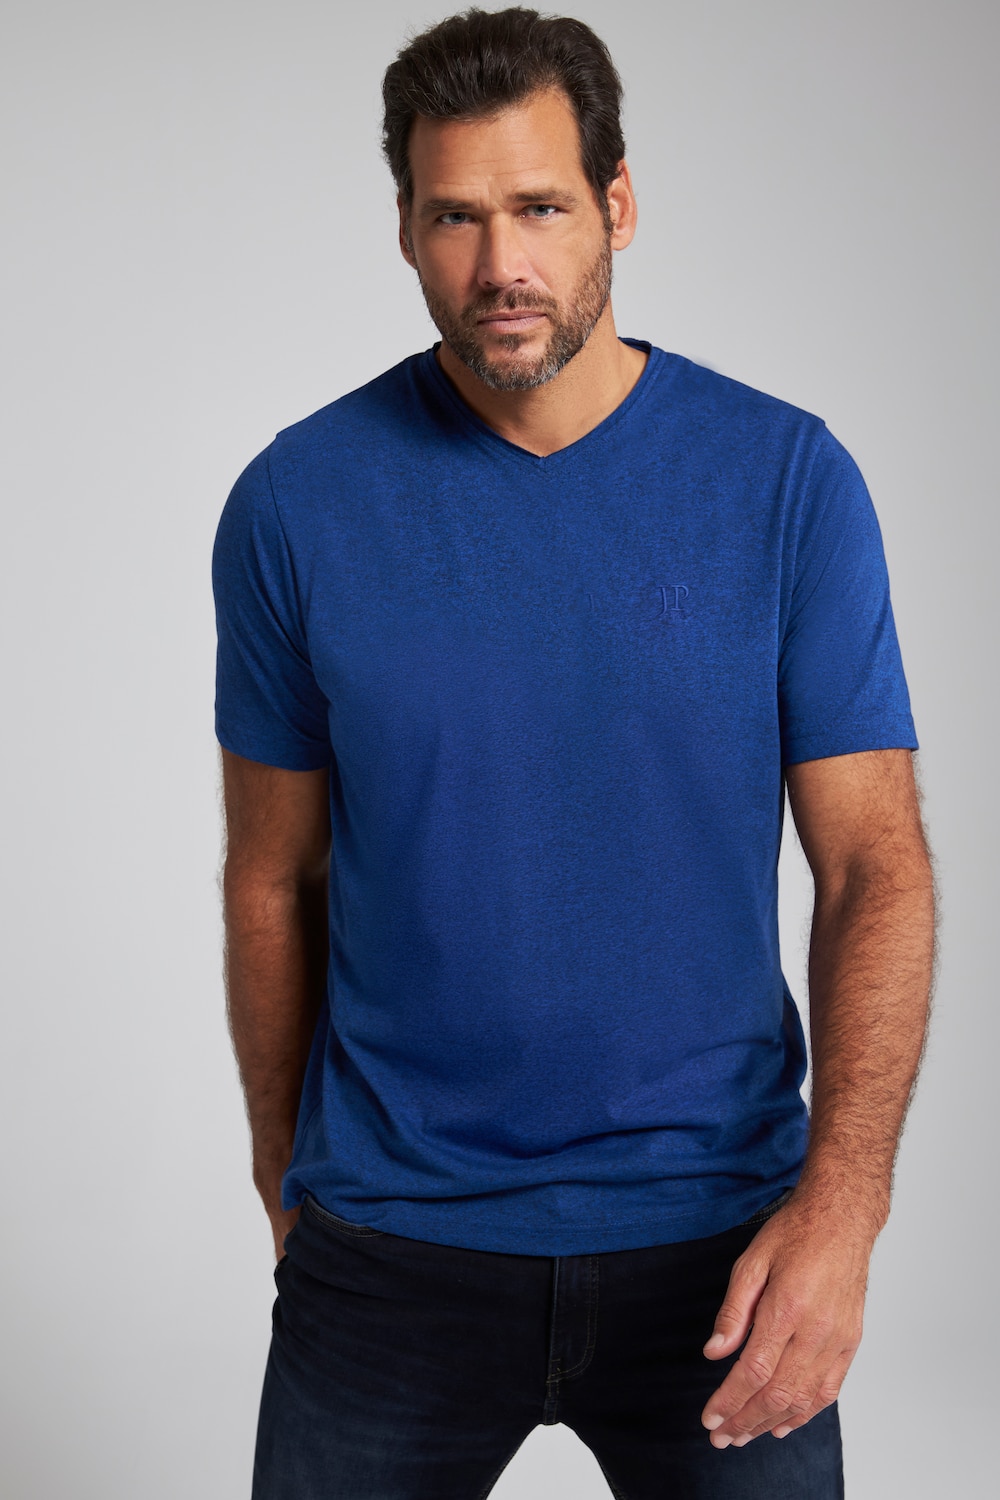 Grote Maten T-shirt, Heren, blauw, Maat: L, Katoen/Polyester, JP1880